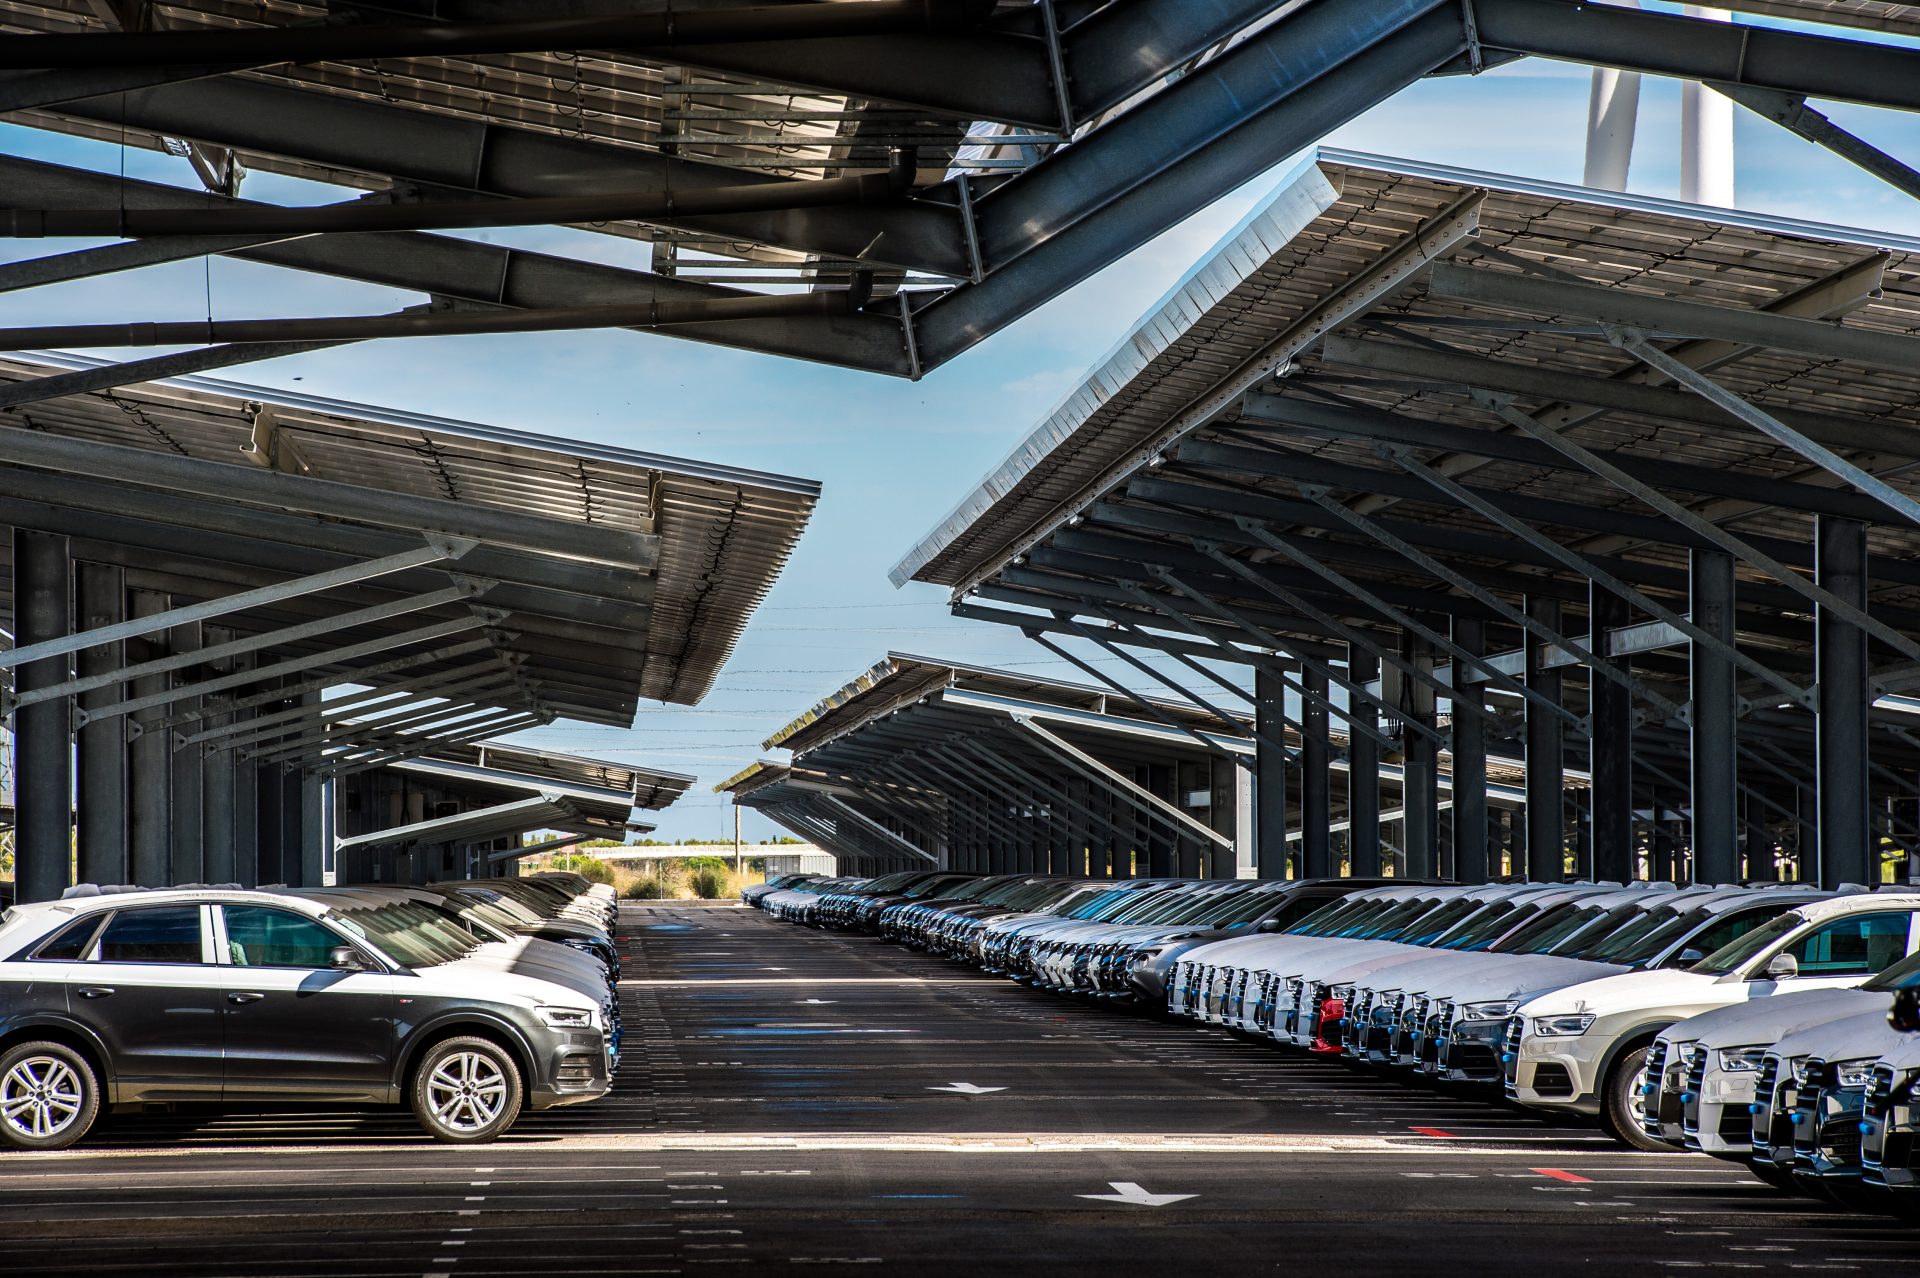 Couverture en ombrières photovoltaïques du parc de véhicules de Volkswagen